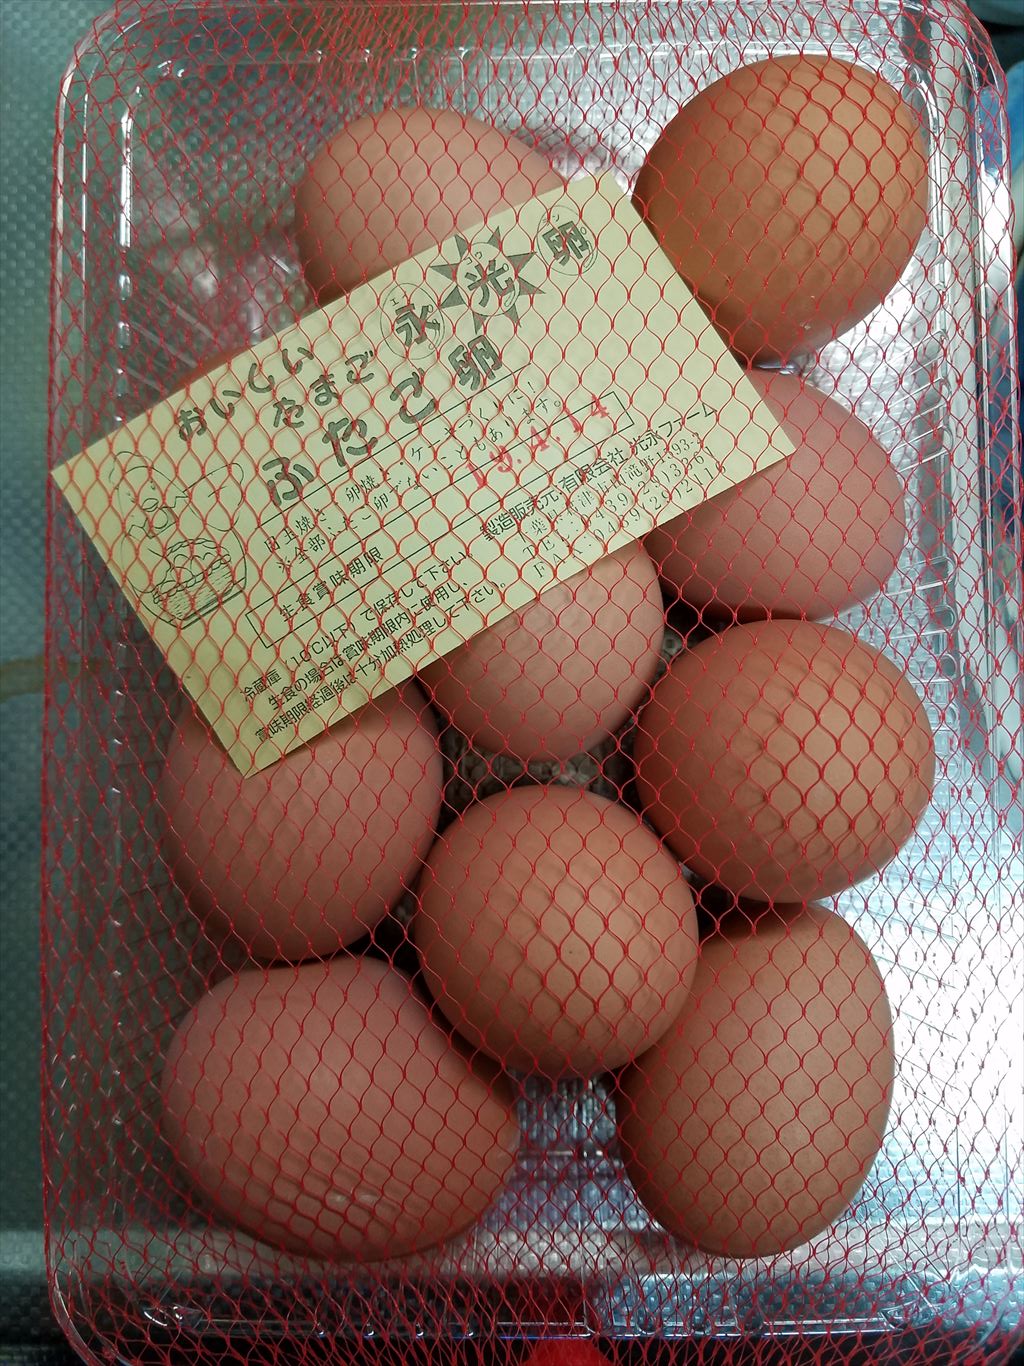 この時期限定らしい 二黄卵を買ってきました 木更津 君津 袖ケ浦の情報をお伝えするブログ なかぶぷろじぇくと